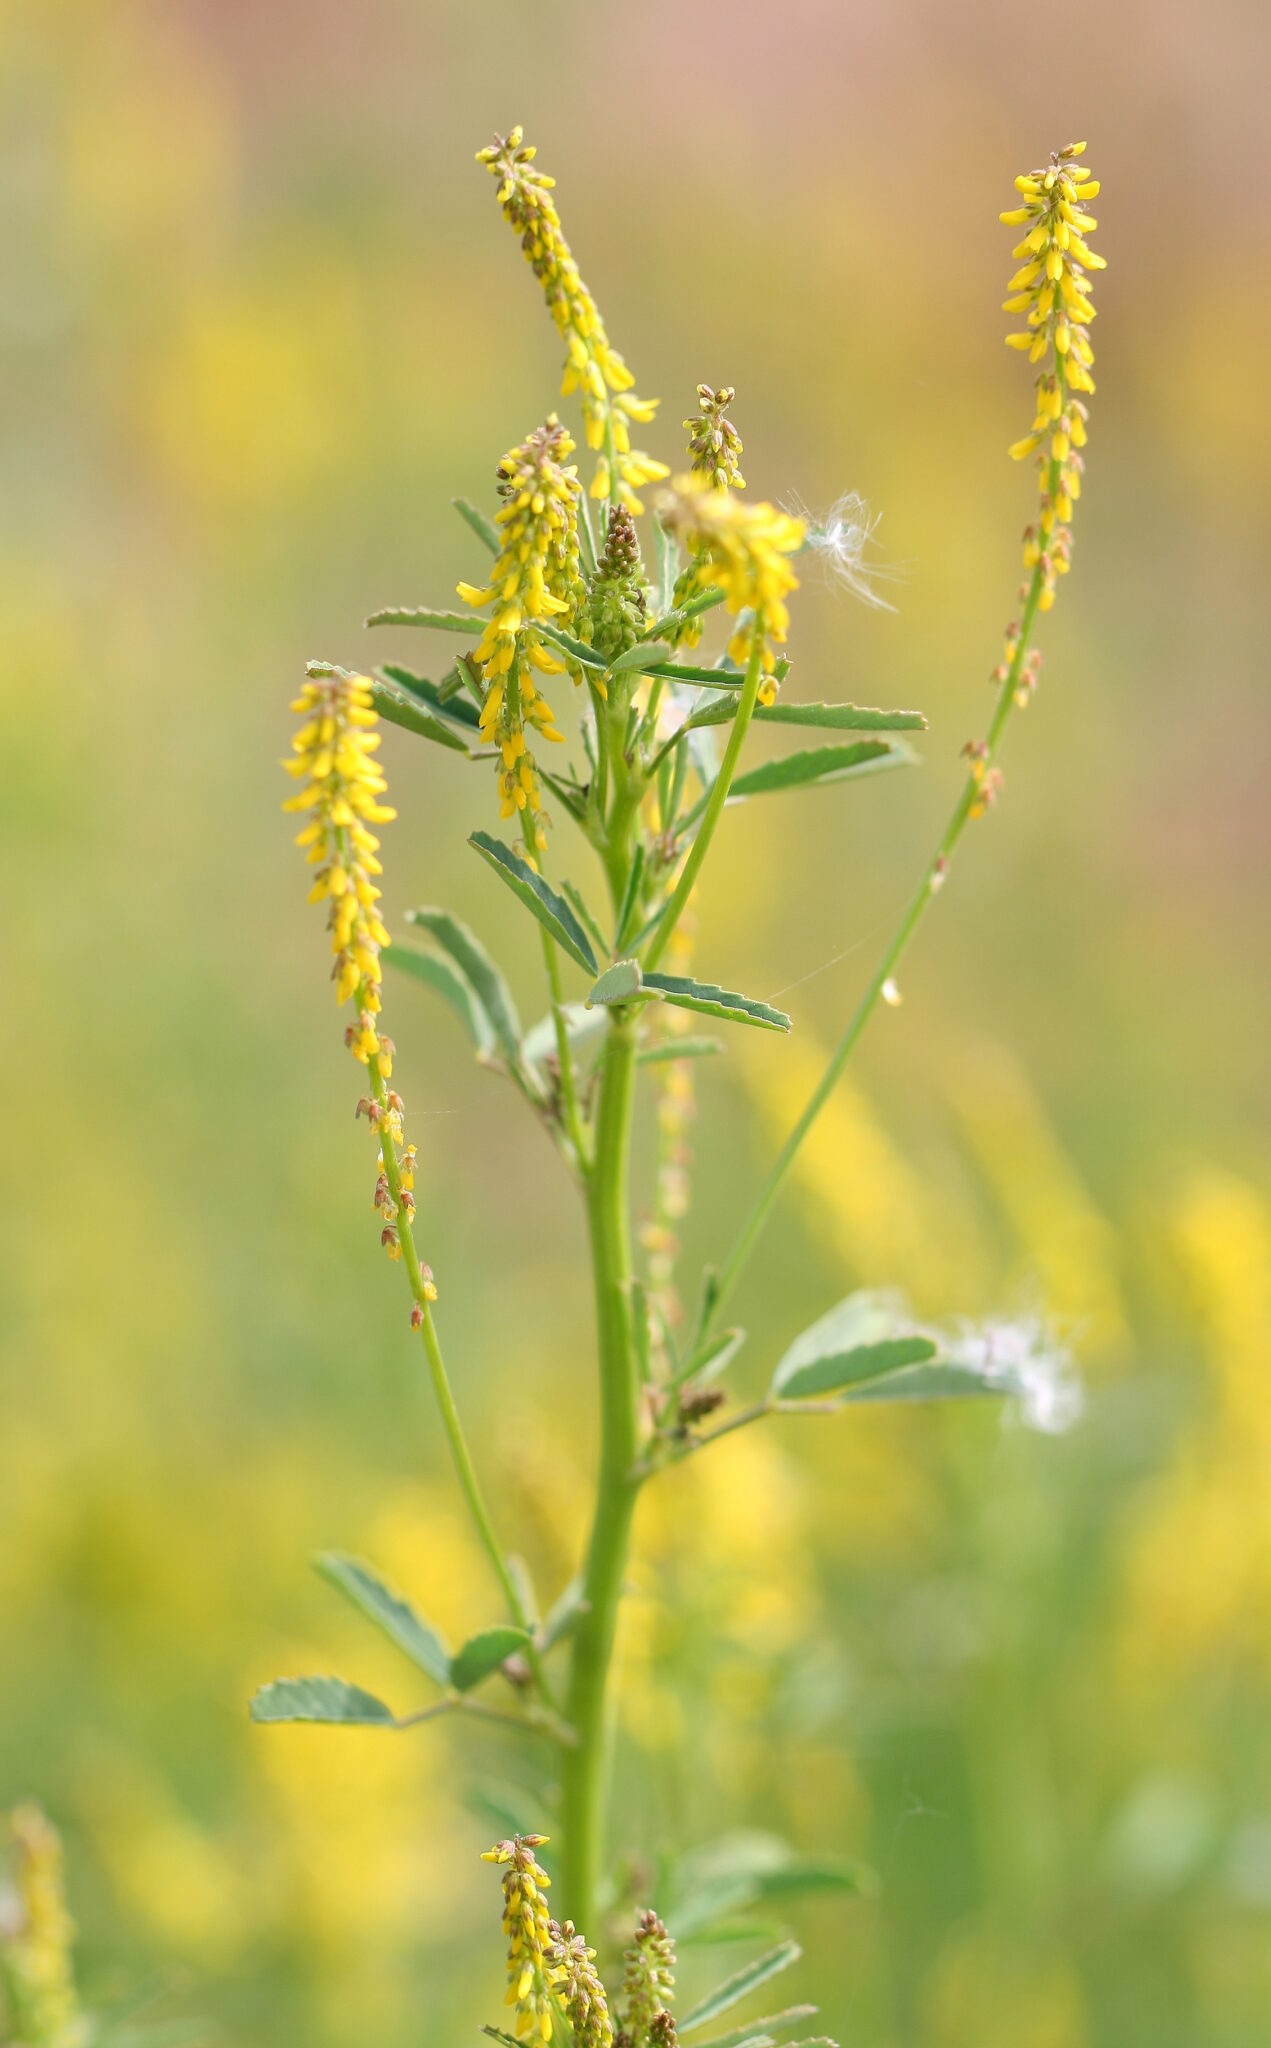 Trébol dulce o de olor, Meliloto amarillo – Melilotus officinalis (L.) Pall.